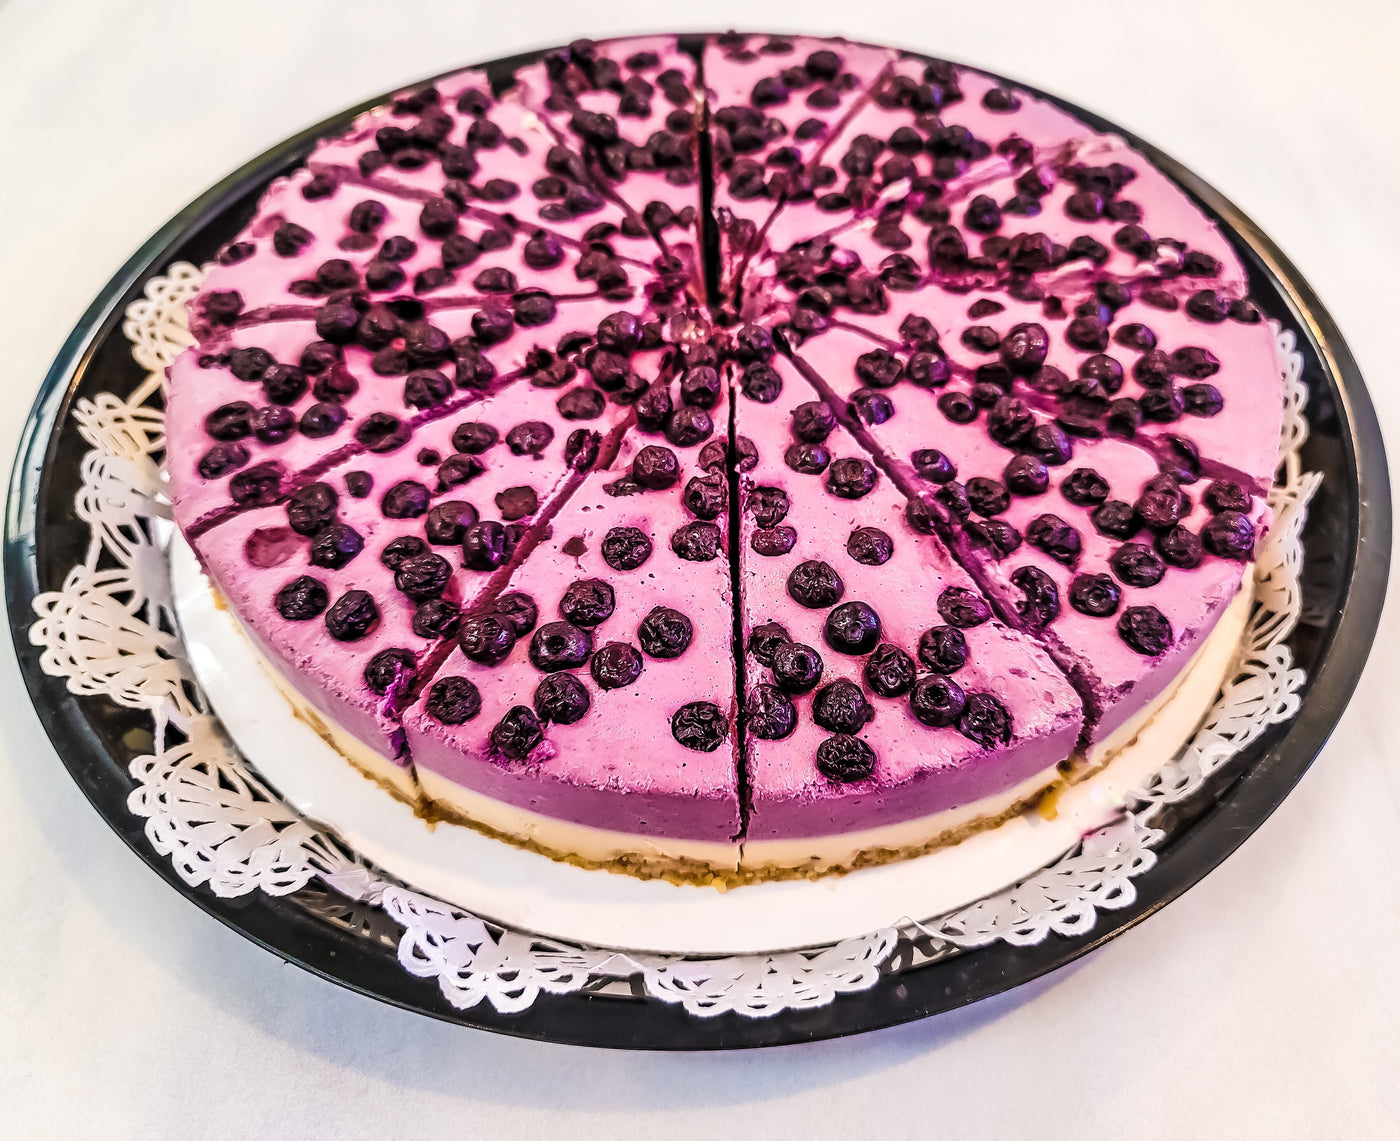 Keto Blueberry Cashew Cheesecake (Raw, Vegan, Paleo, Non-GMO, Low-Carb, Gluten-Free, Grain-Free, Dairy-Free, Diabetic-Friendly)